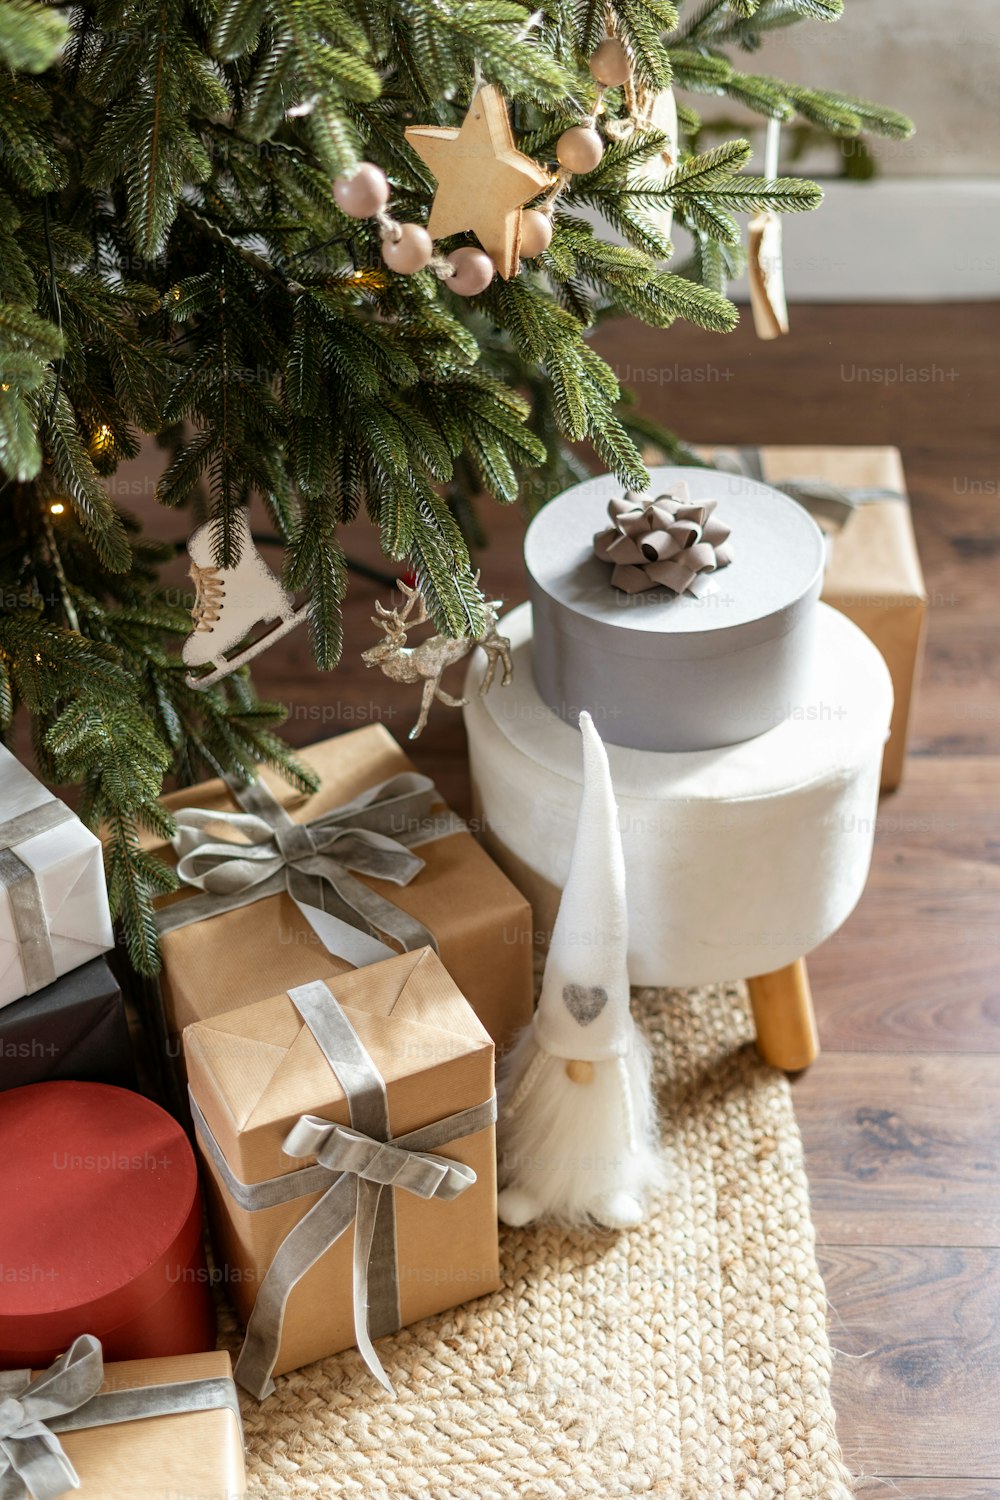 Vista vertical de caixas de presente de ano novo, brinquedos e pacotes de presentes sob a árvore de Natal decorada. Conceito de celebrações de inverno e decoração de casa desember